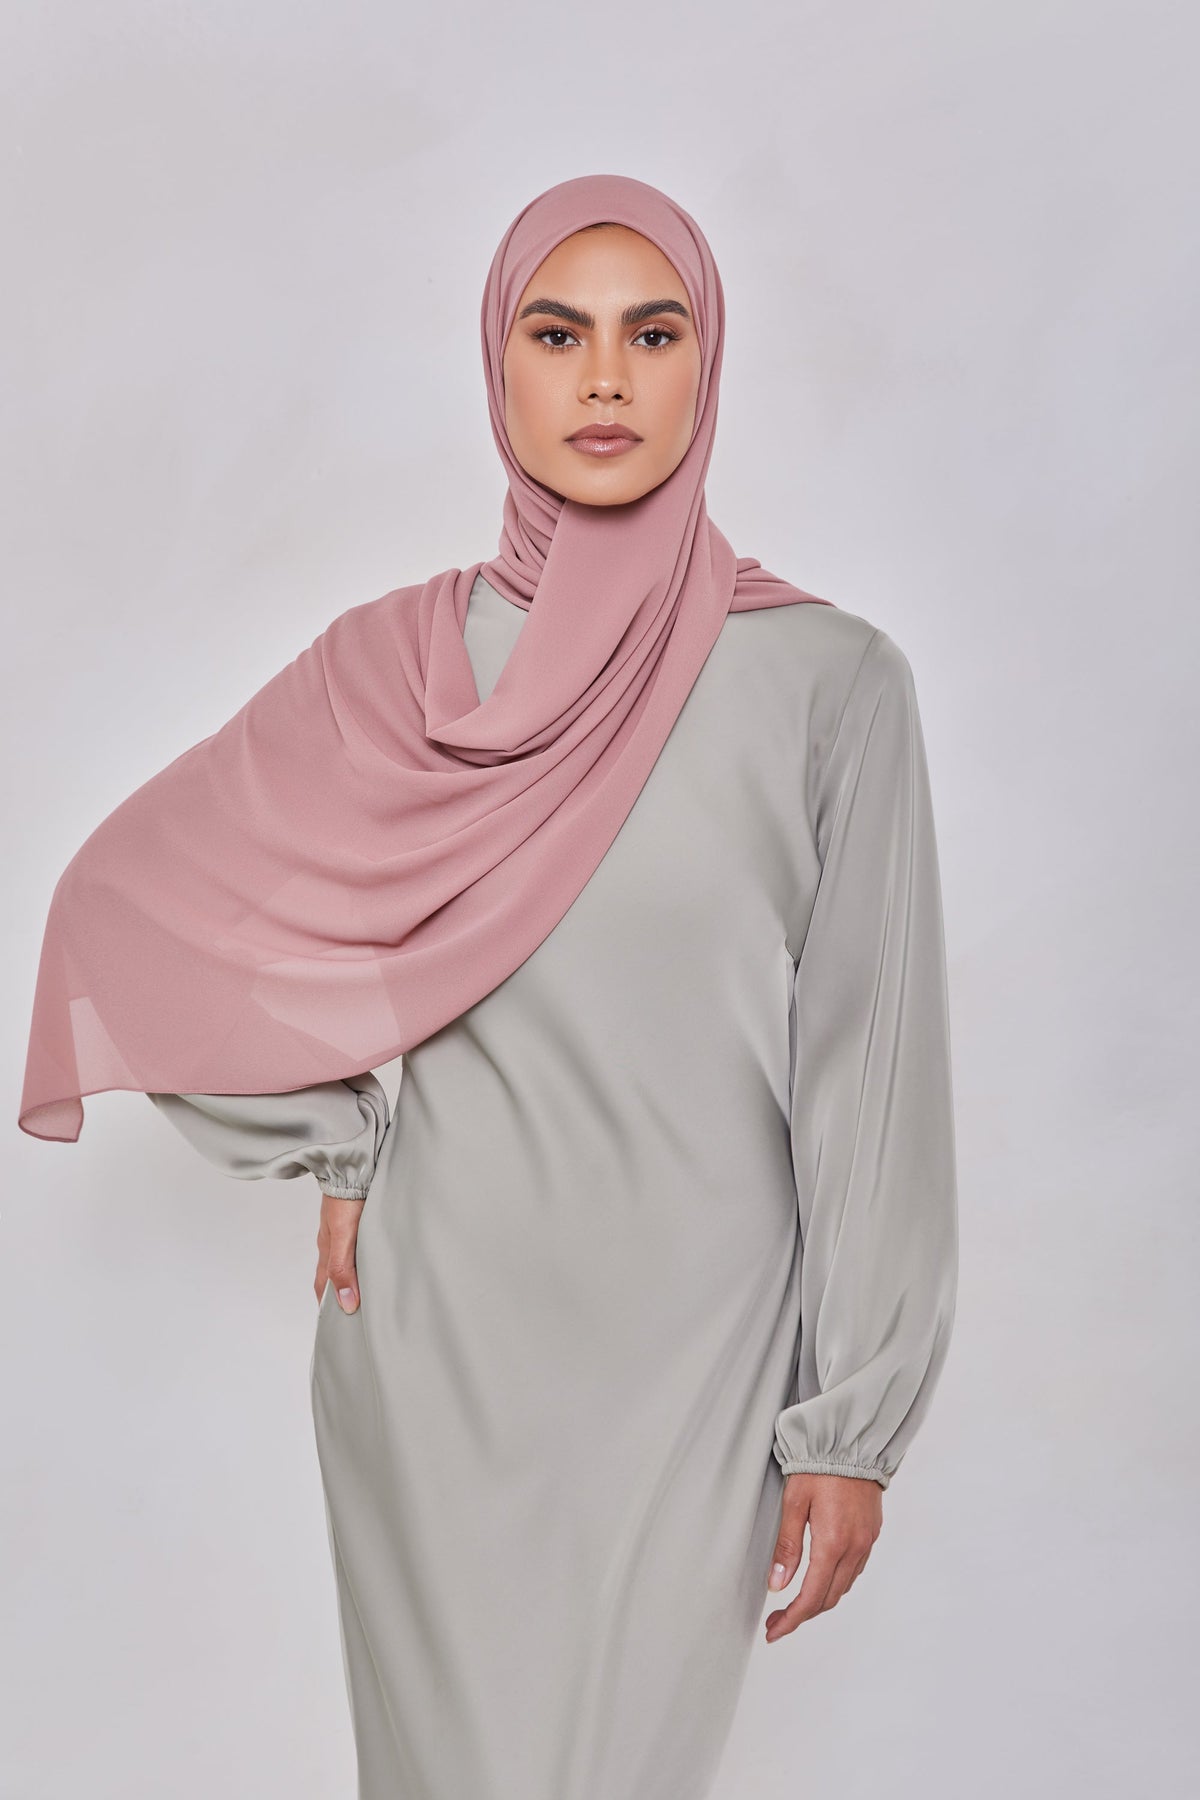 Essential Chiffon Hijab - Rose Nude Scarves & Shawls epschoolboard 